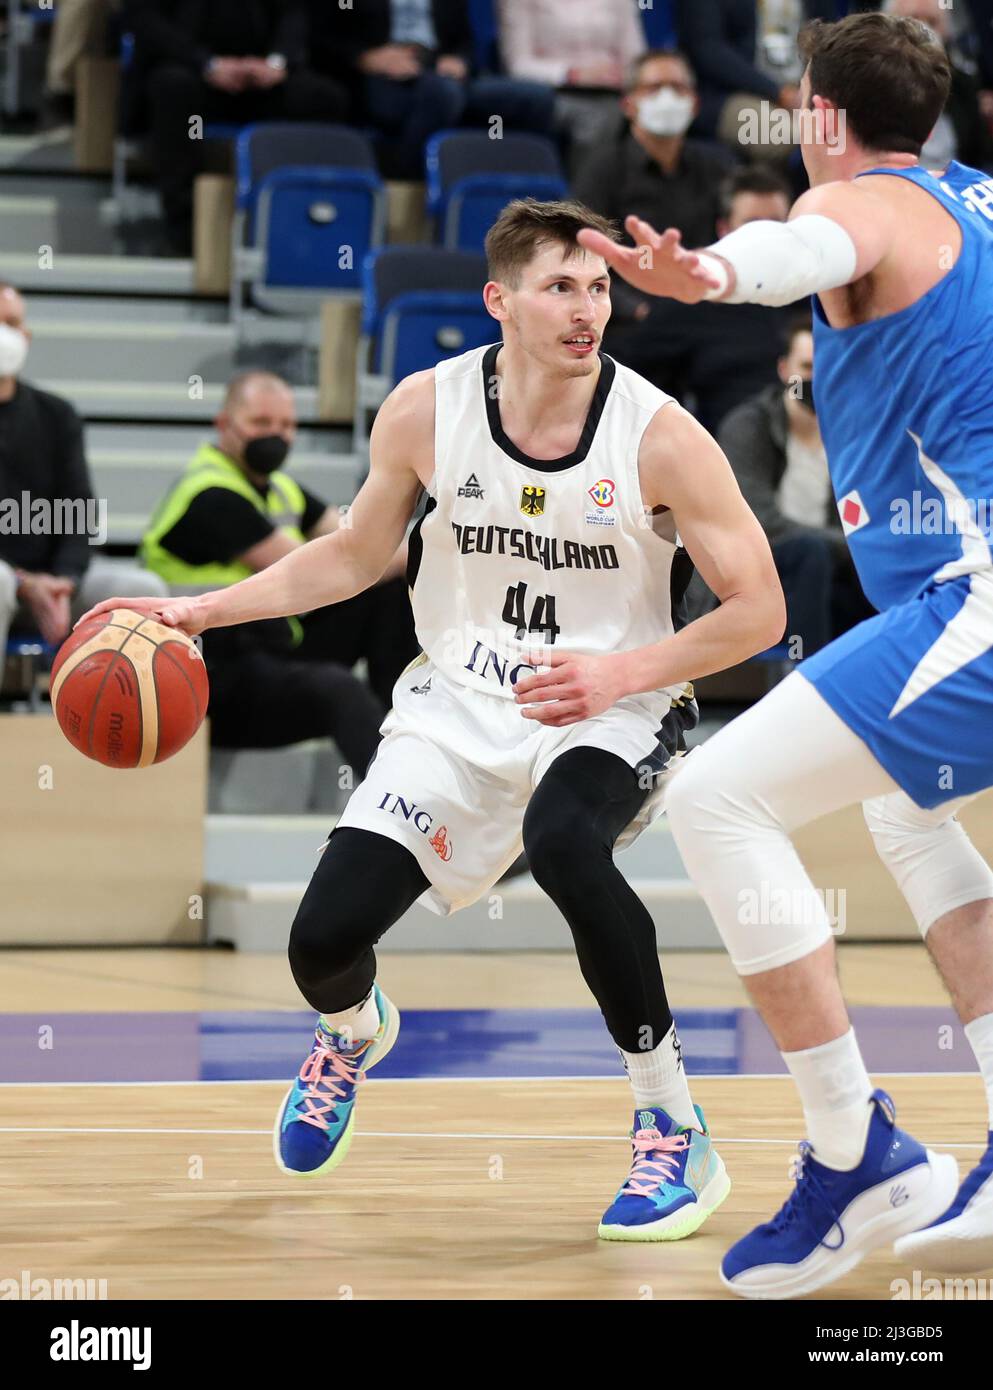 David Kramer #44 von Deutschland Germany vs Israel Basketball World Cup  Qualifiers 28.02.2022 snp Dome Heidelberg © diebilderwelt / Alamy Stock  Stock Photo - Alamy